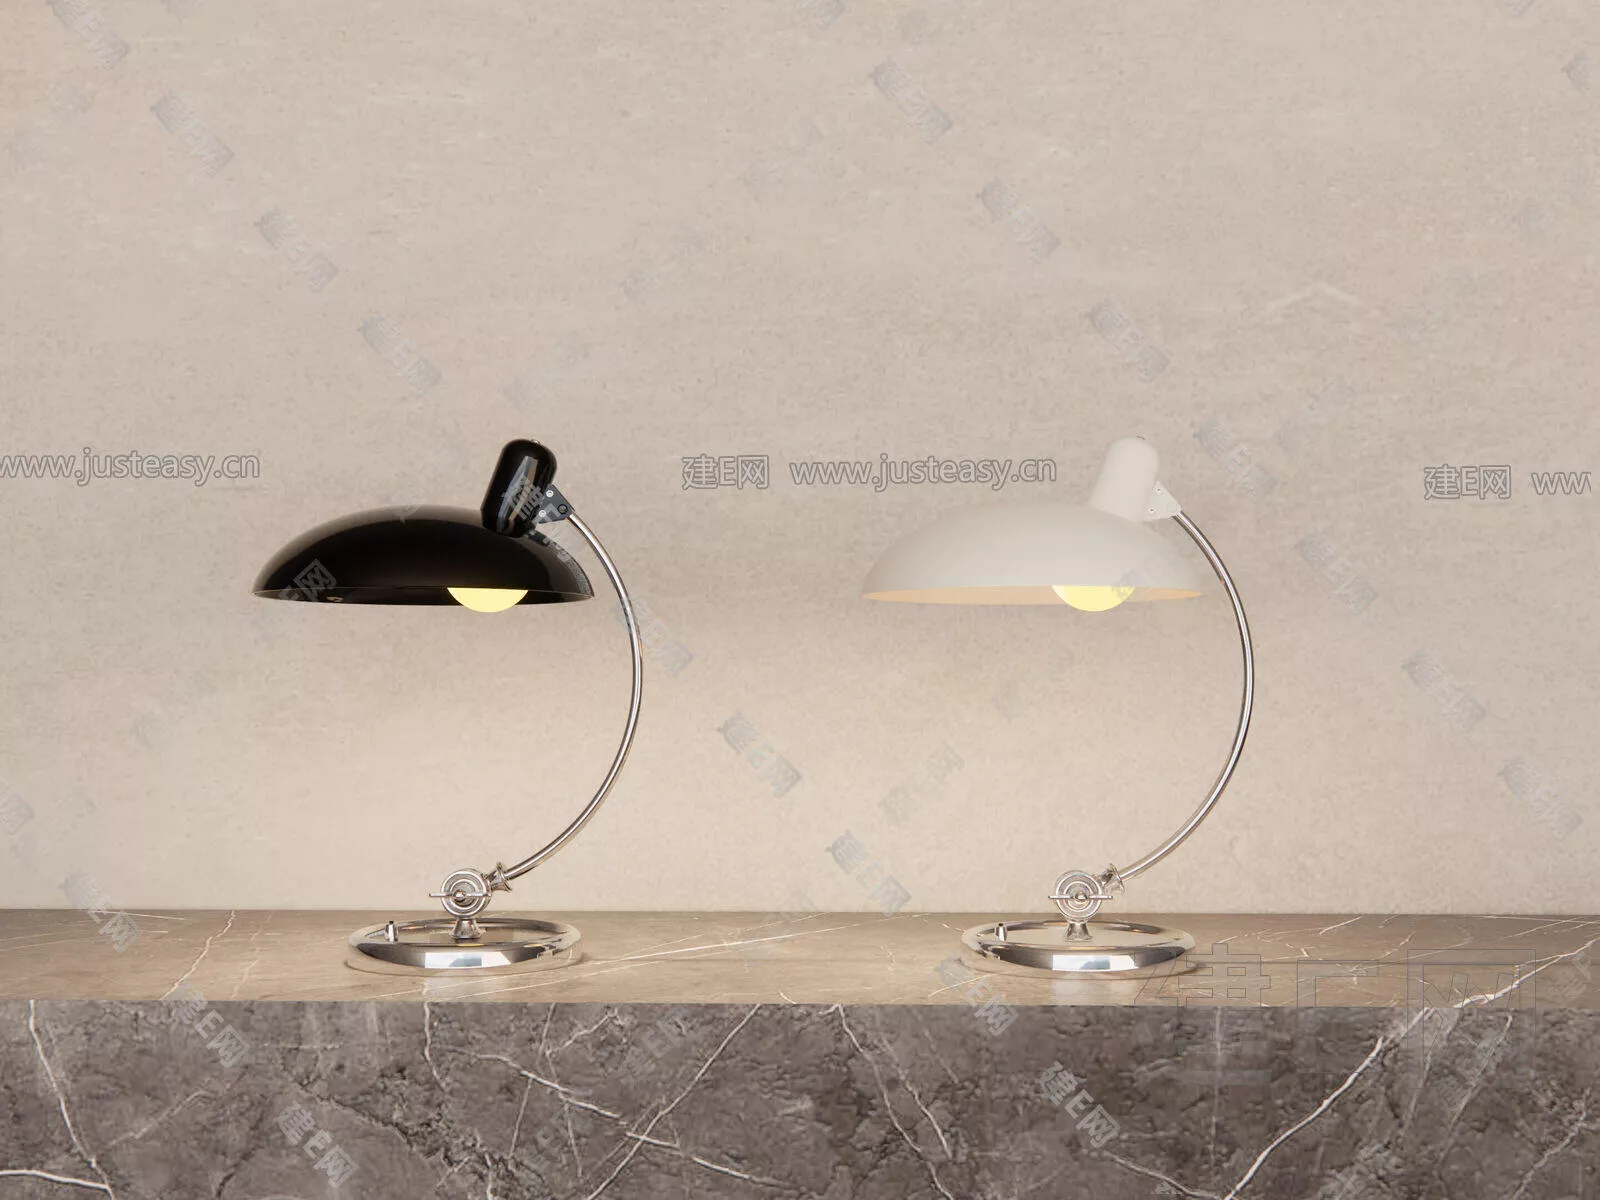 MODERN TABLE LAMP - SKETCHUP 3D MODEL - ENSCAPE - 106841277